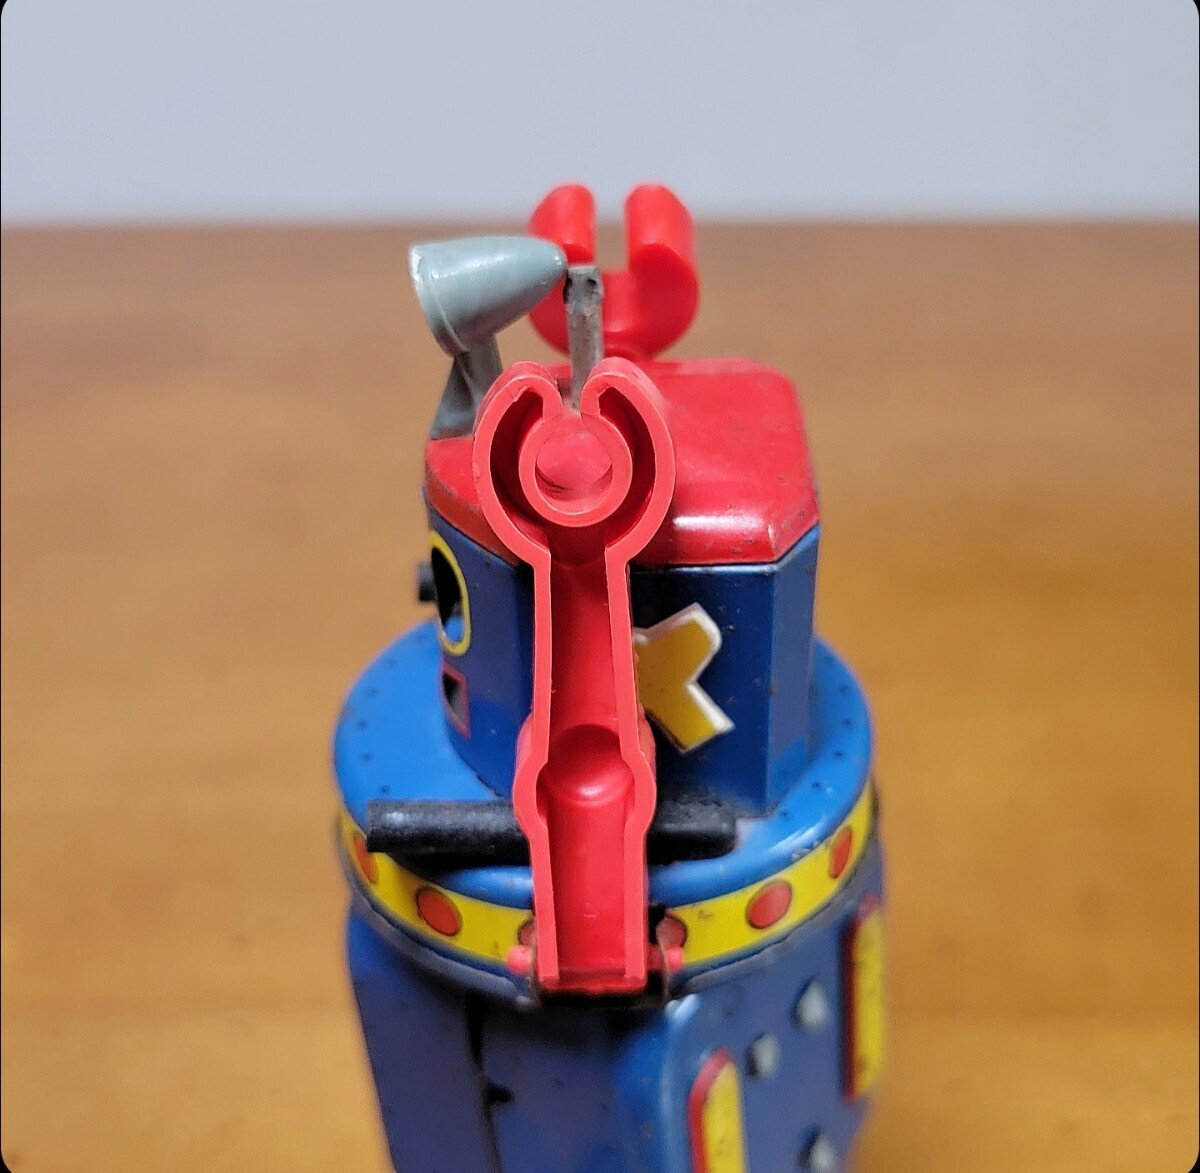 [ATOMIC ROBOT* Yonezawa игрушка ]{ старый подлинная вещь * жестяная пластина робот * сделано в Японии }